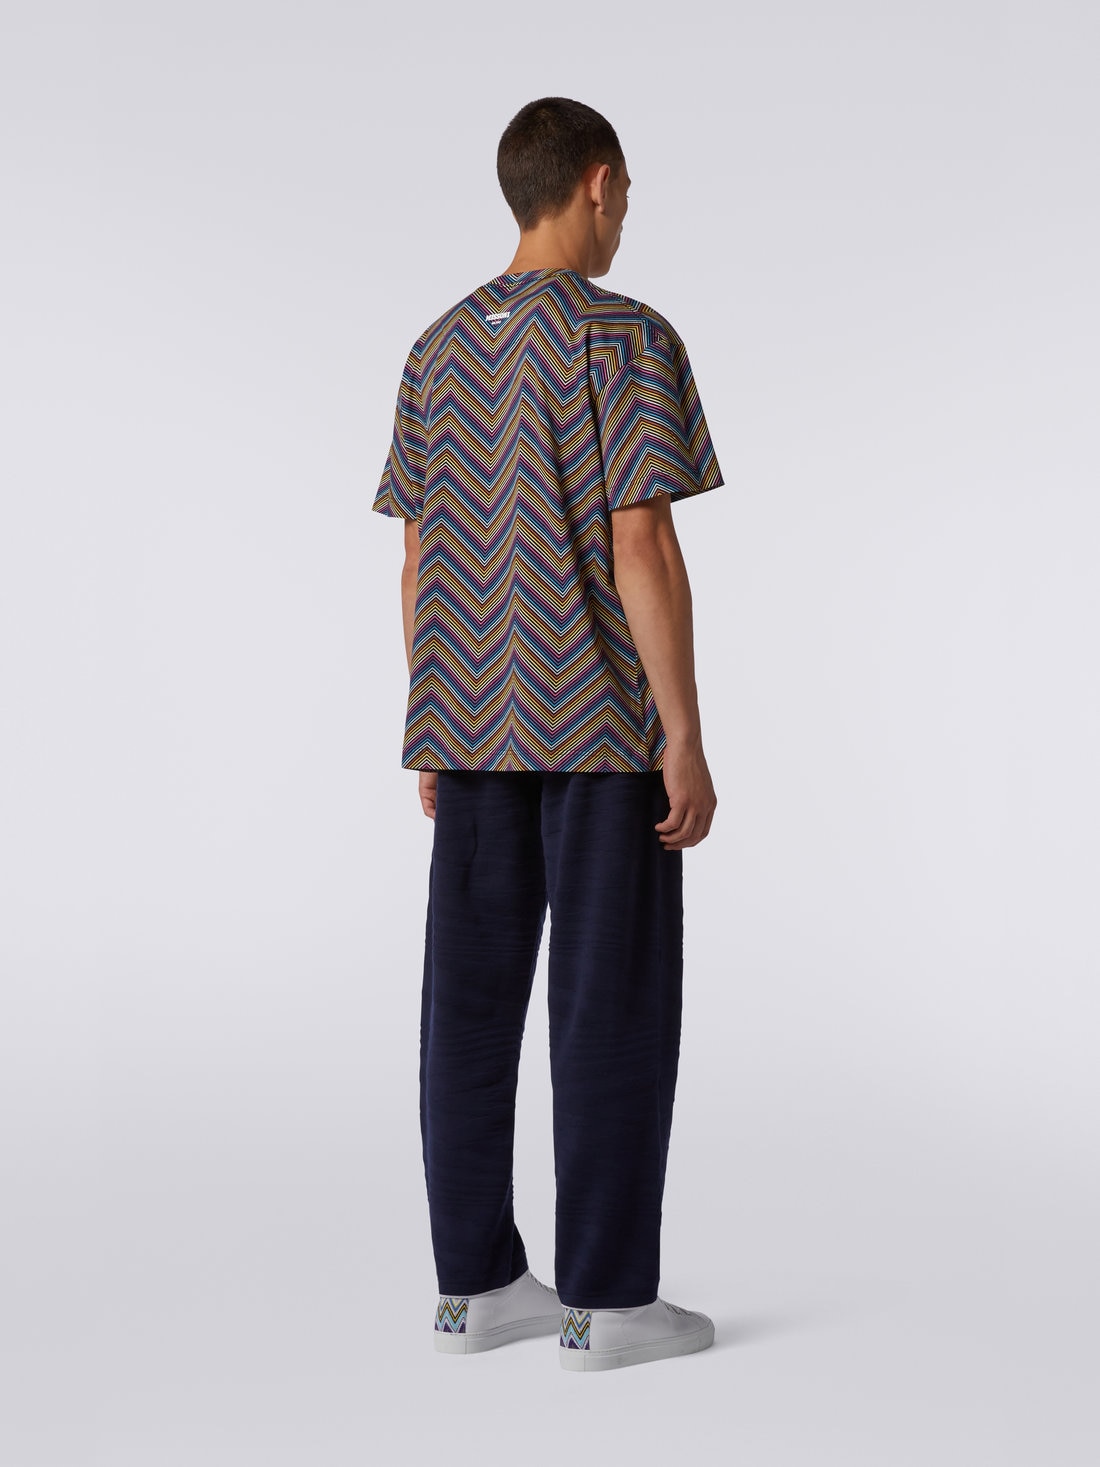 Camiseta de cuello redondo de algodón en zigzag integral, Multicolor  - US23SL19BJ00EZS91DJ - 3